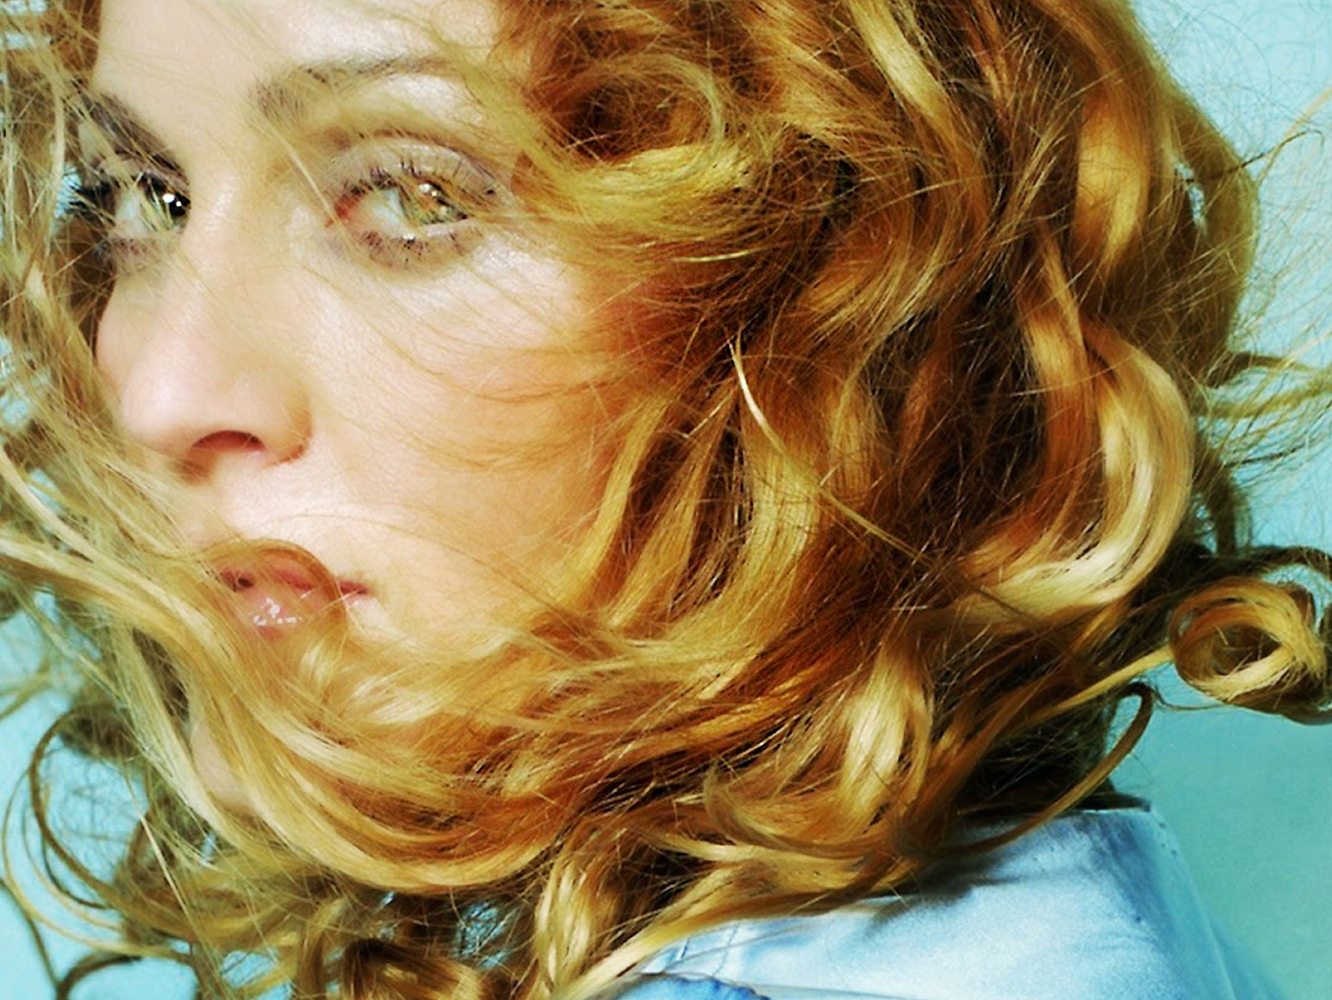  Filtrados demos de ‘Ray Of Light’ que muestran que Madonna preparaba otro tipo de álbum